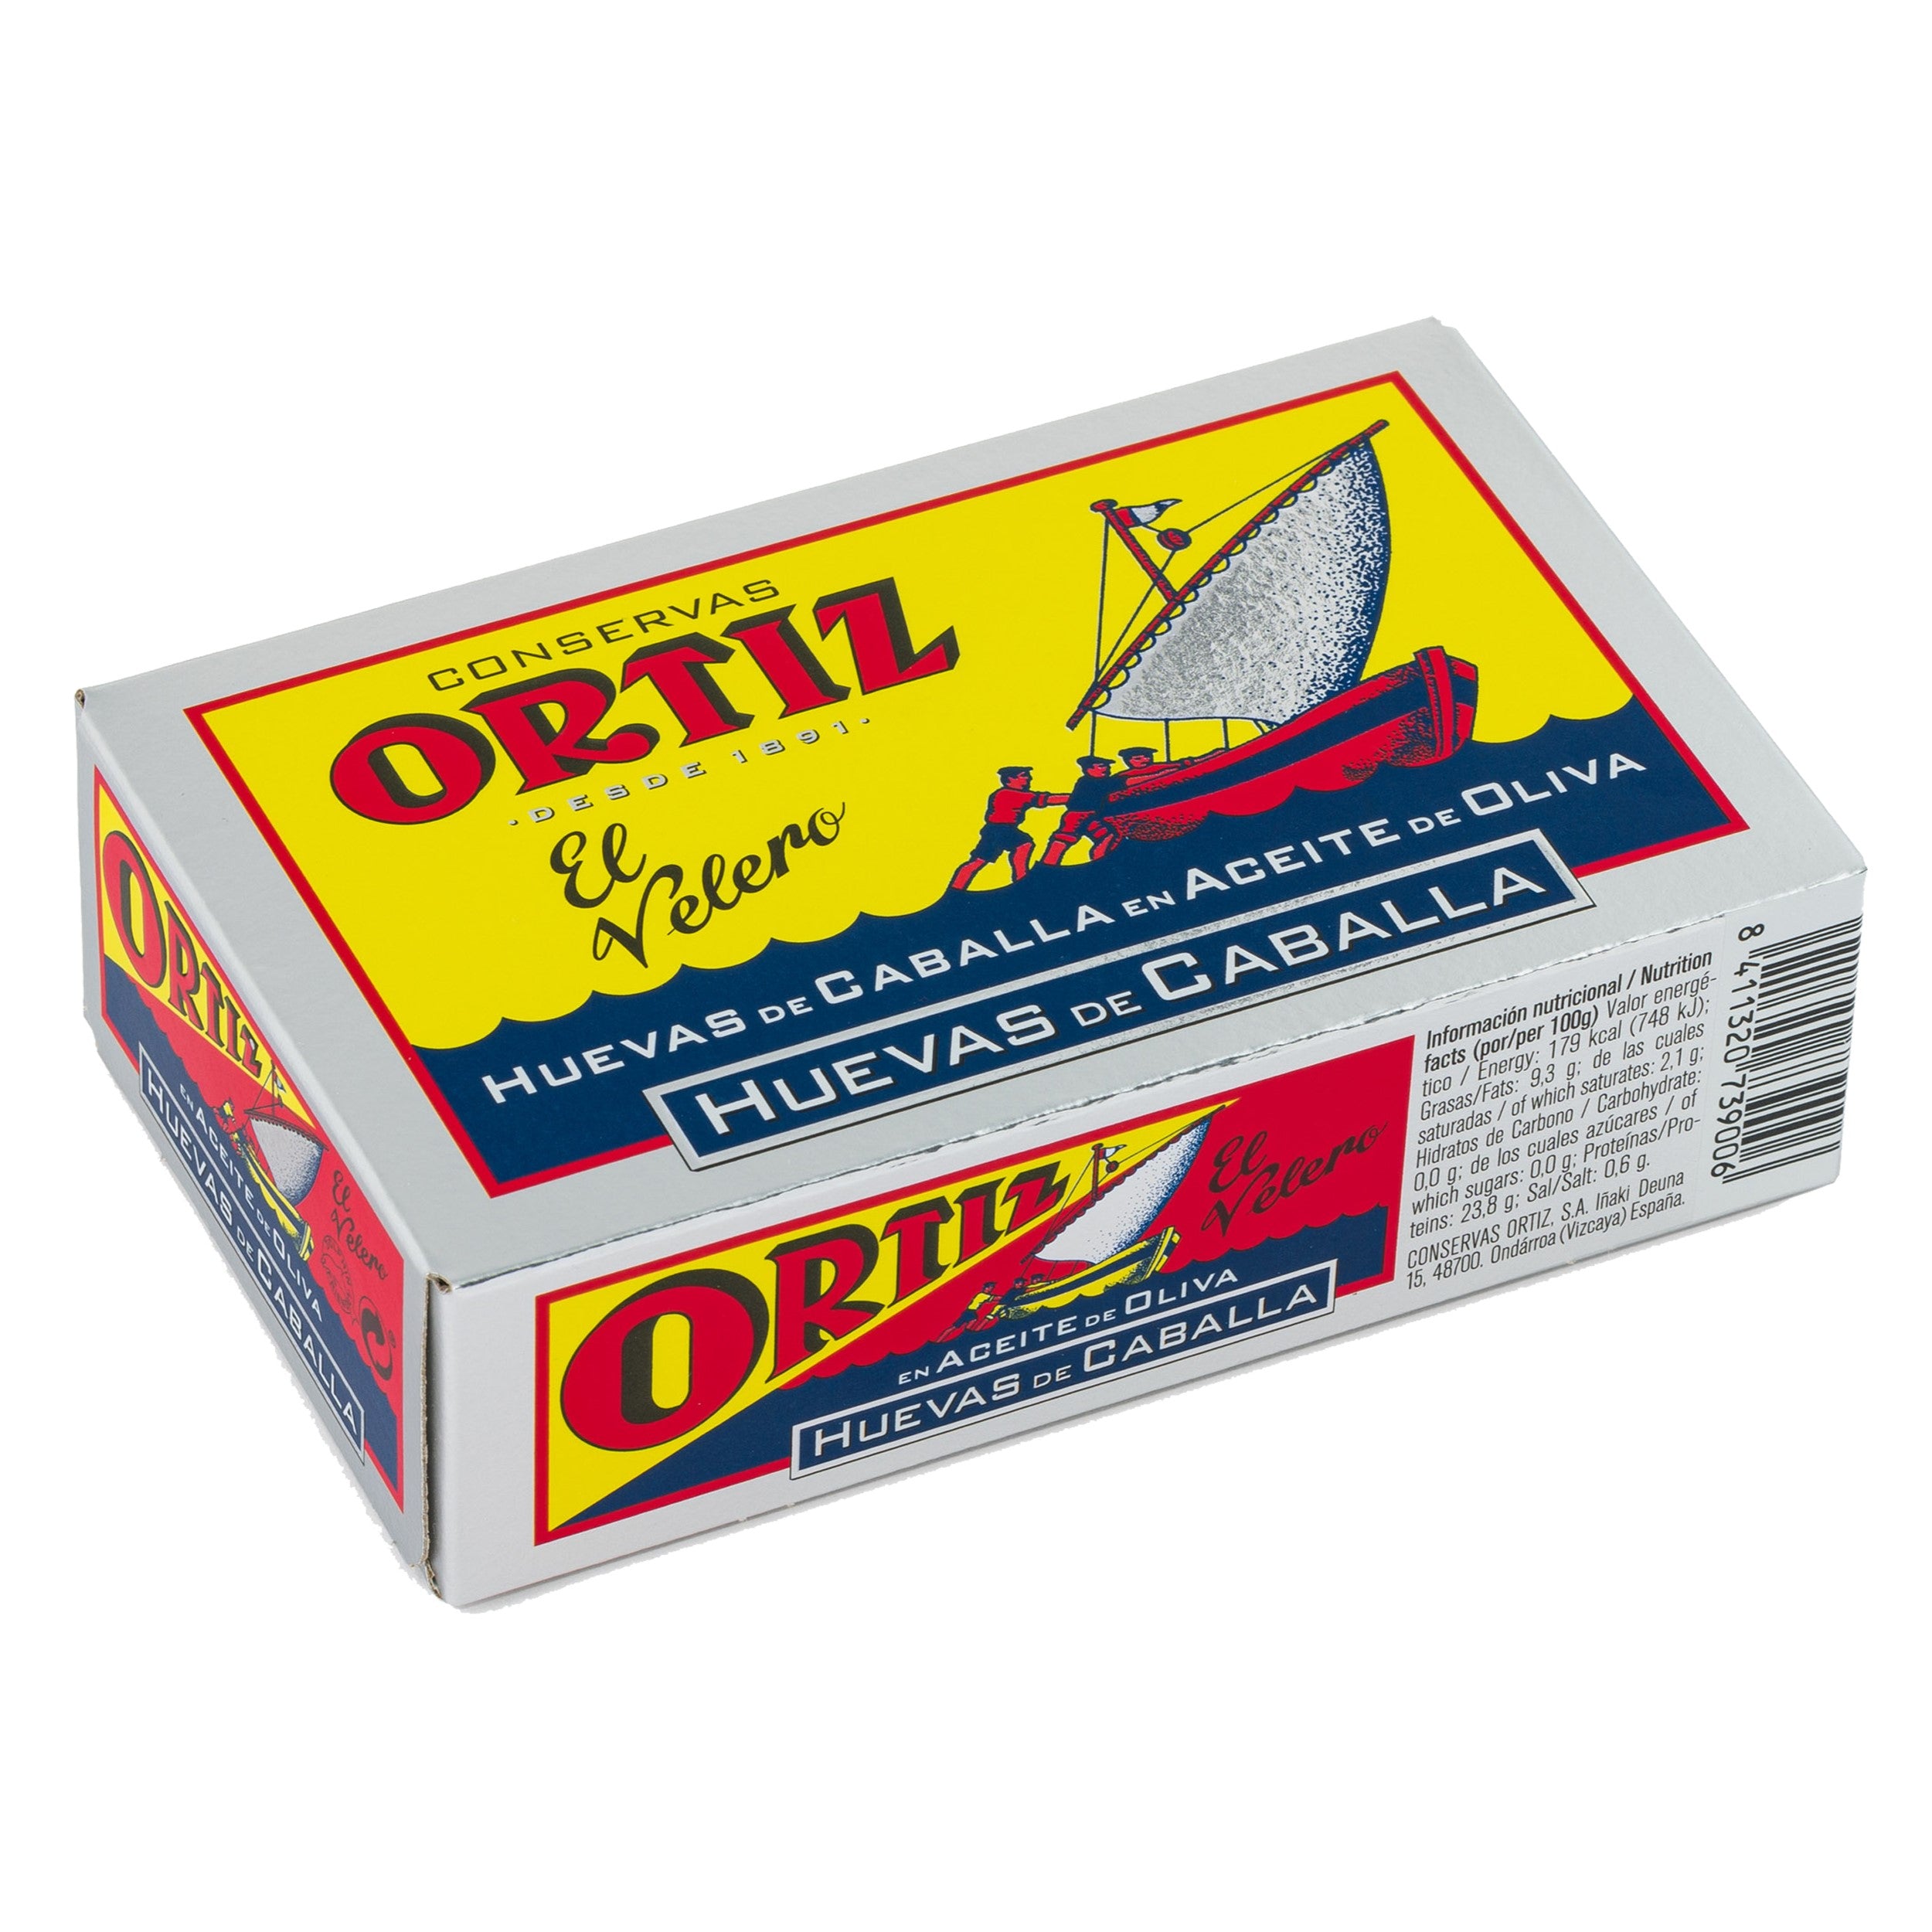 Ortiz Roe in Olive Oil 110g